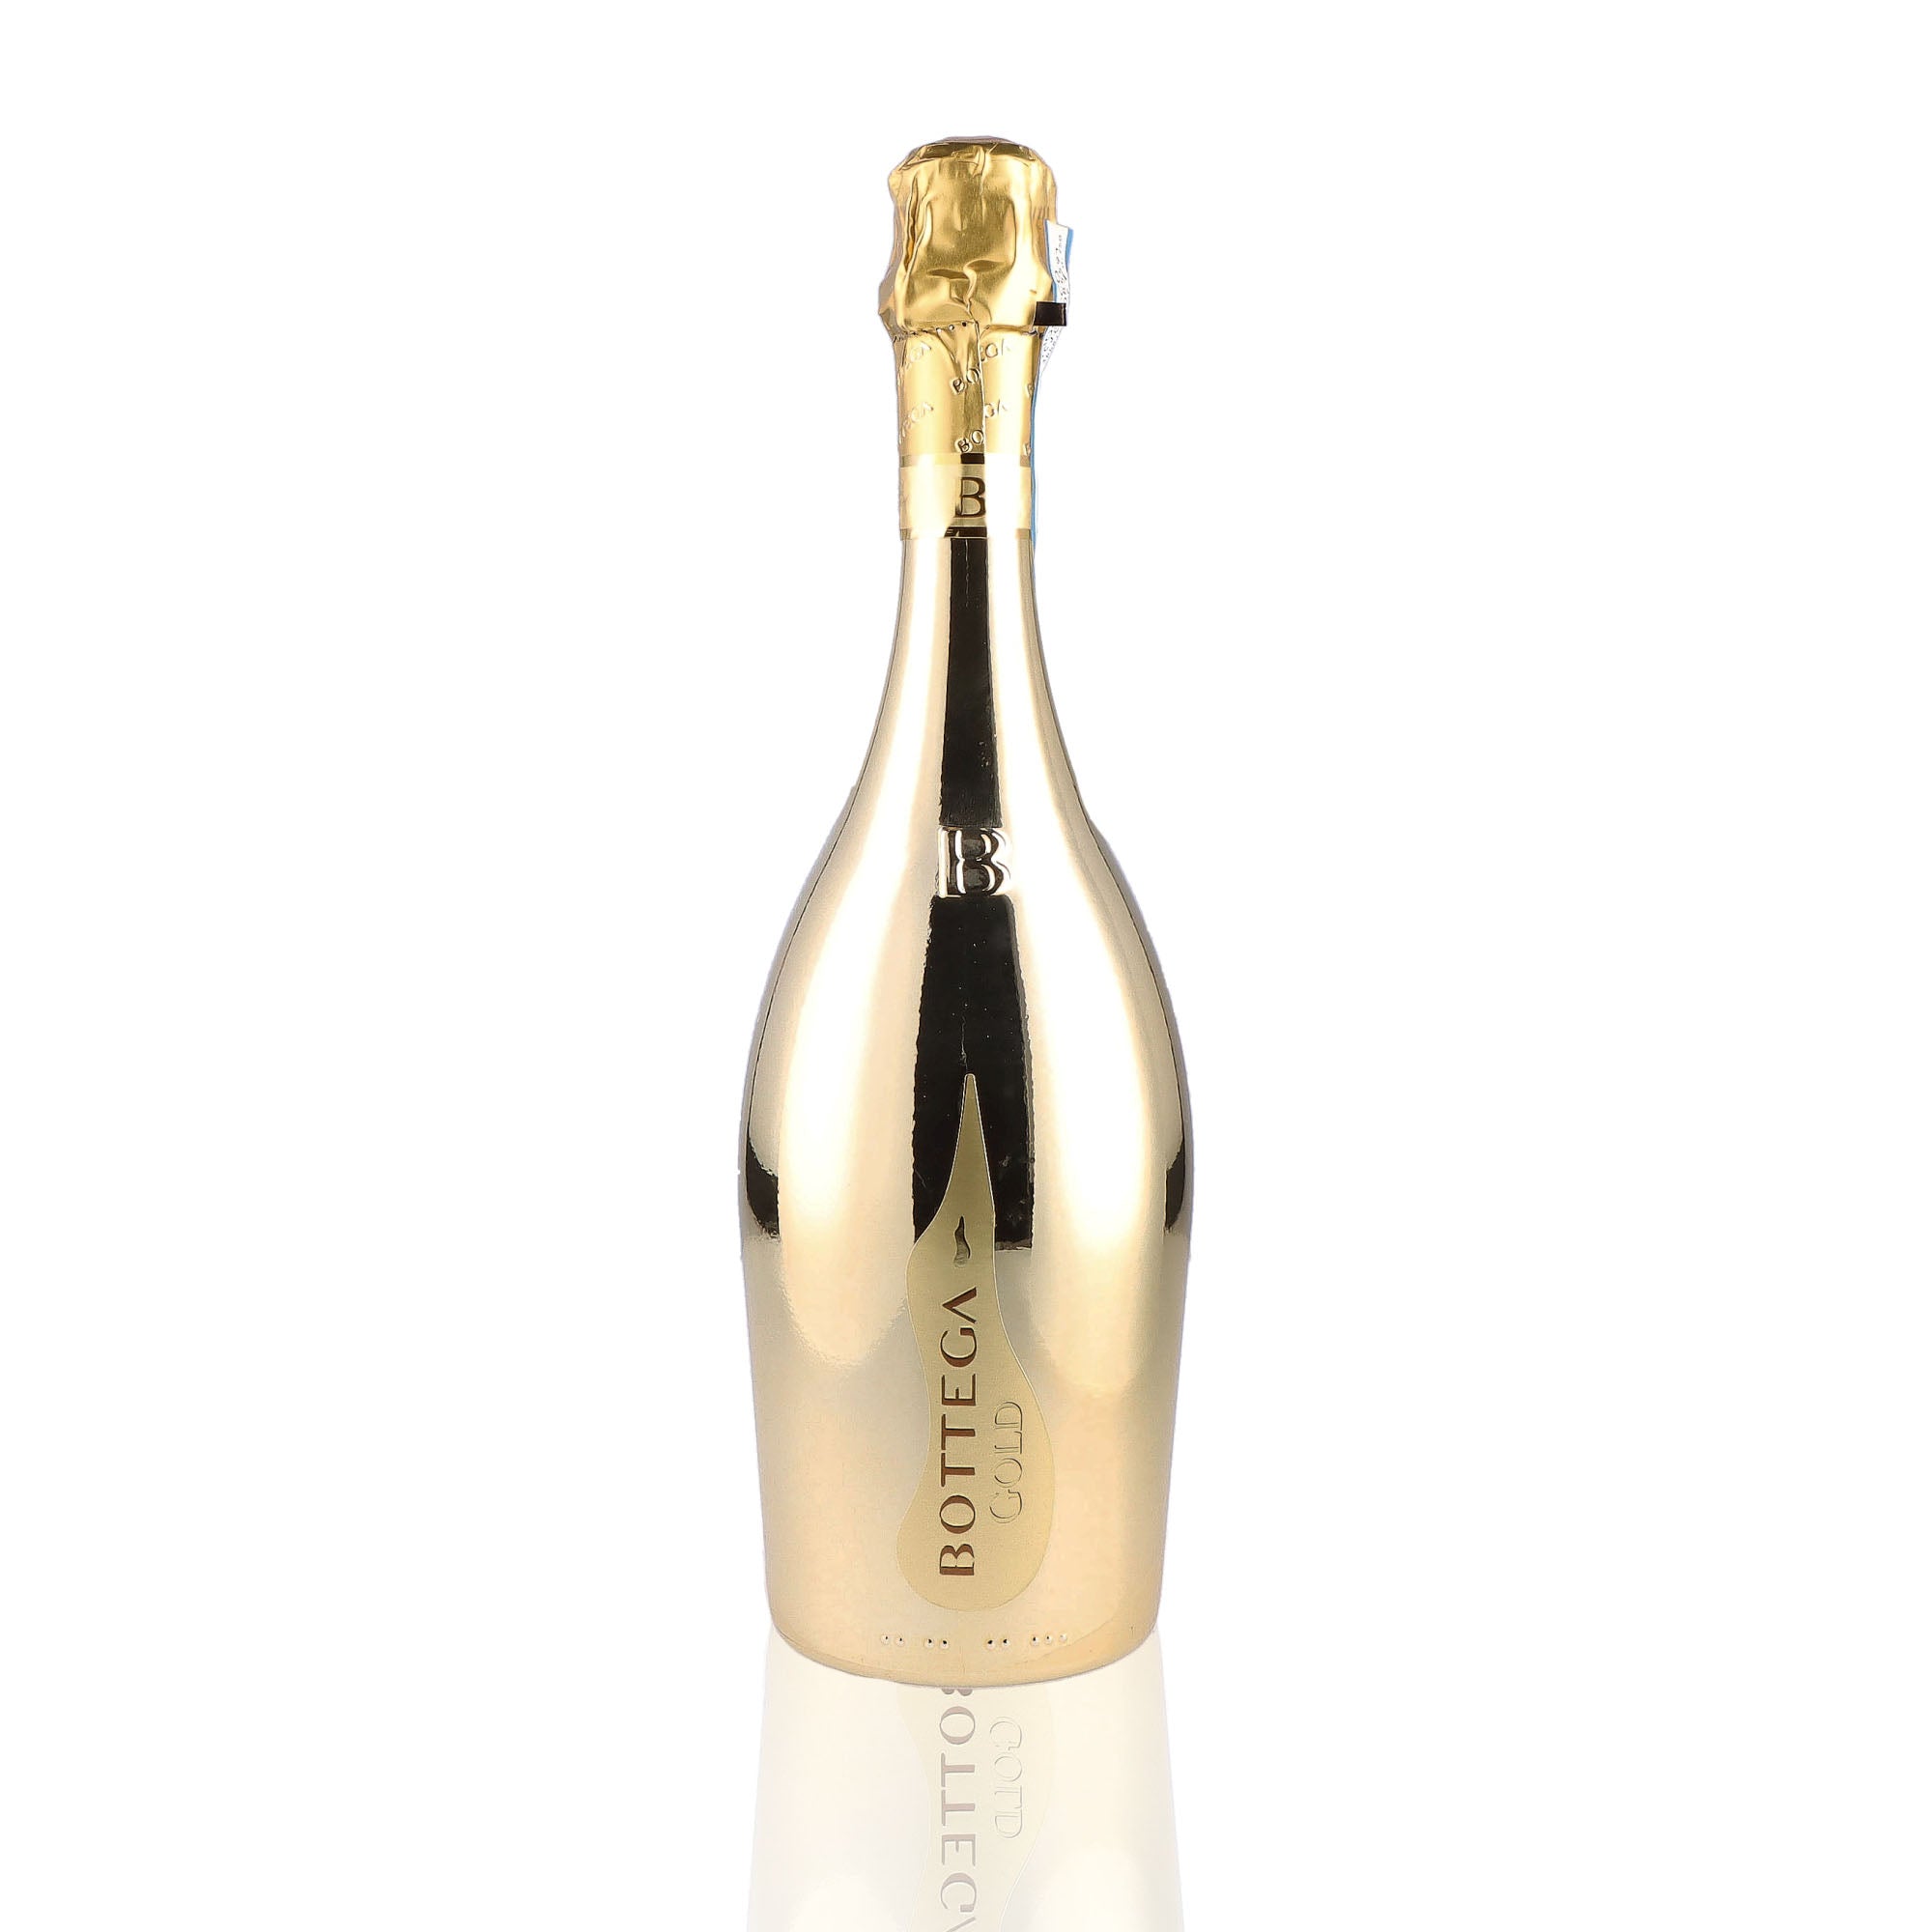 Une bouteille de prosecco de la marque Bottega, de type brut, nommée gold.